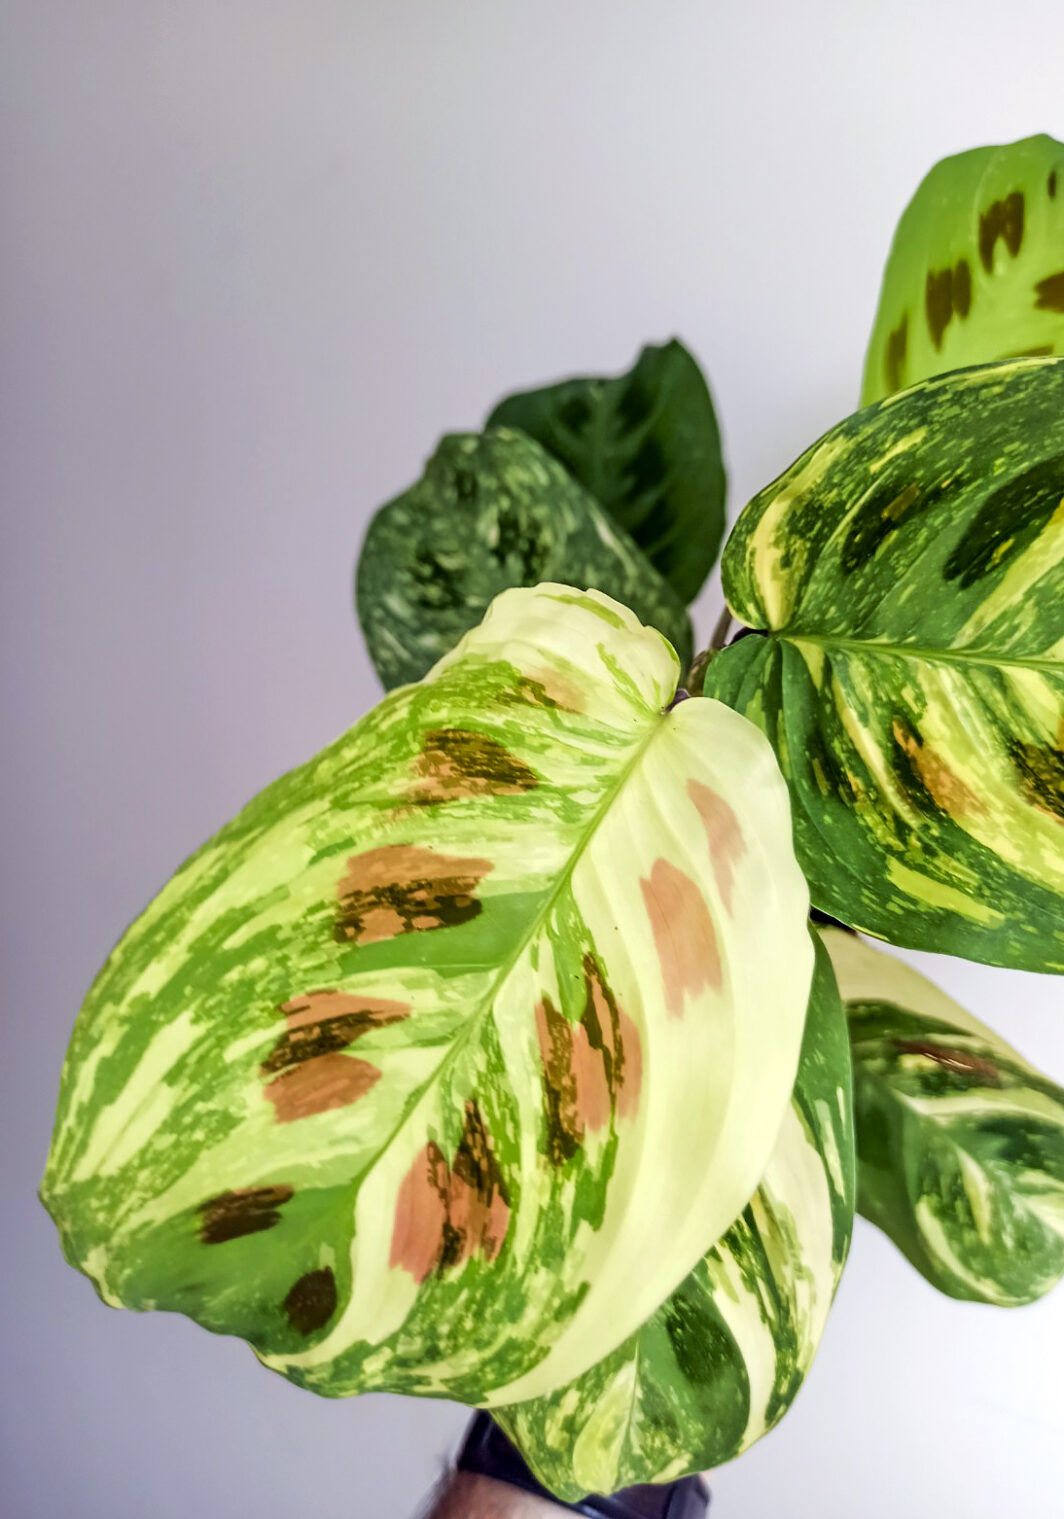 Maranta kerchoveana variegata